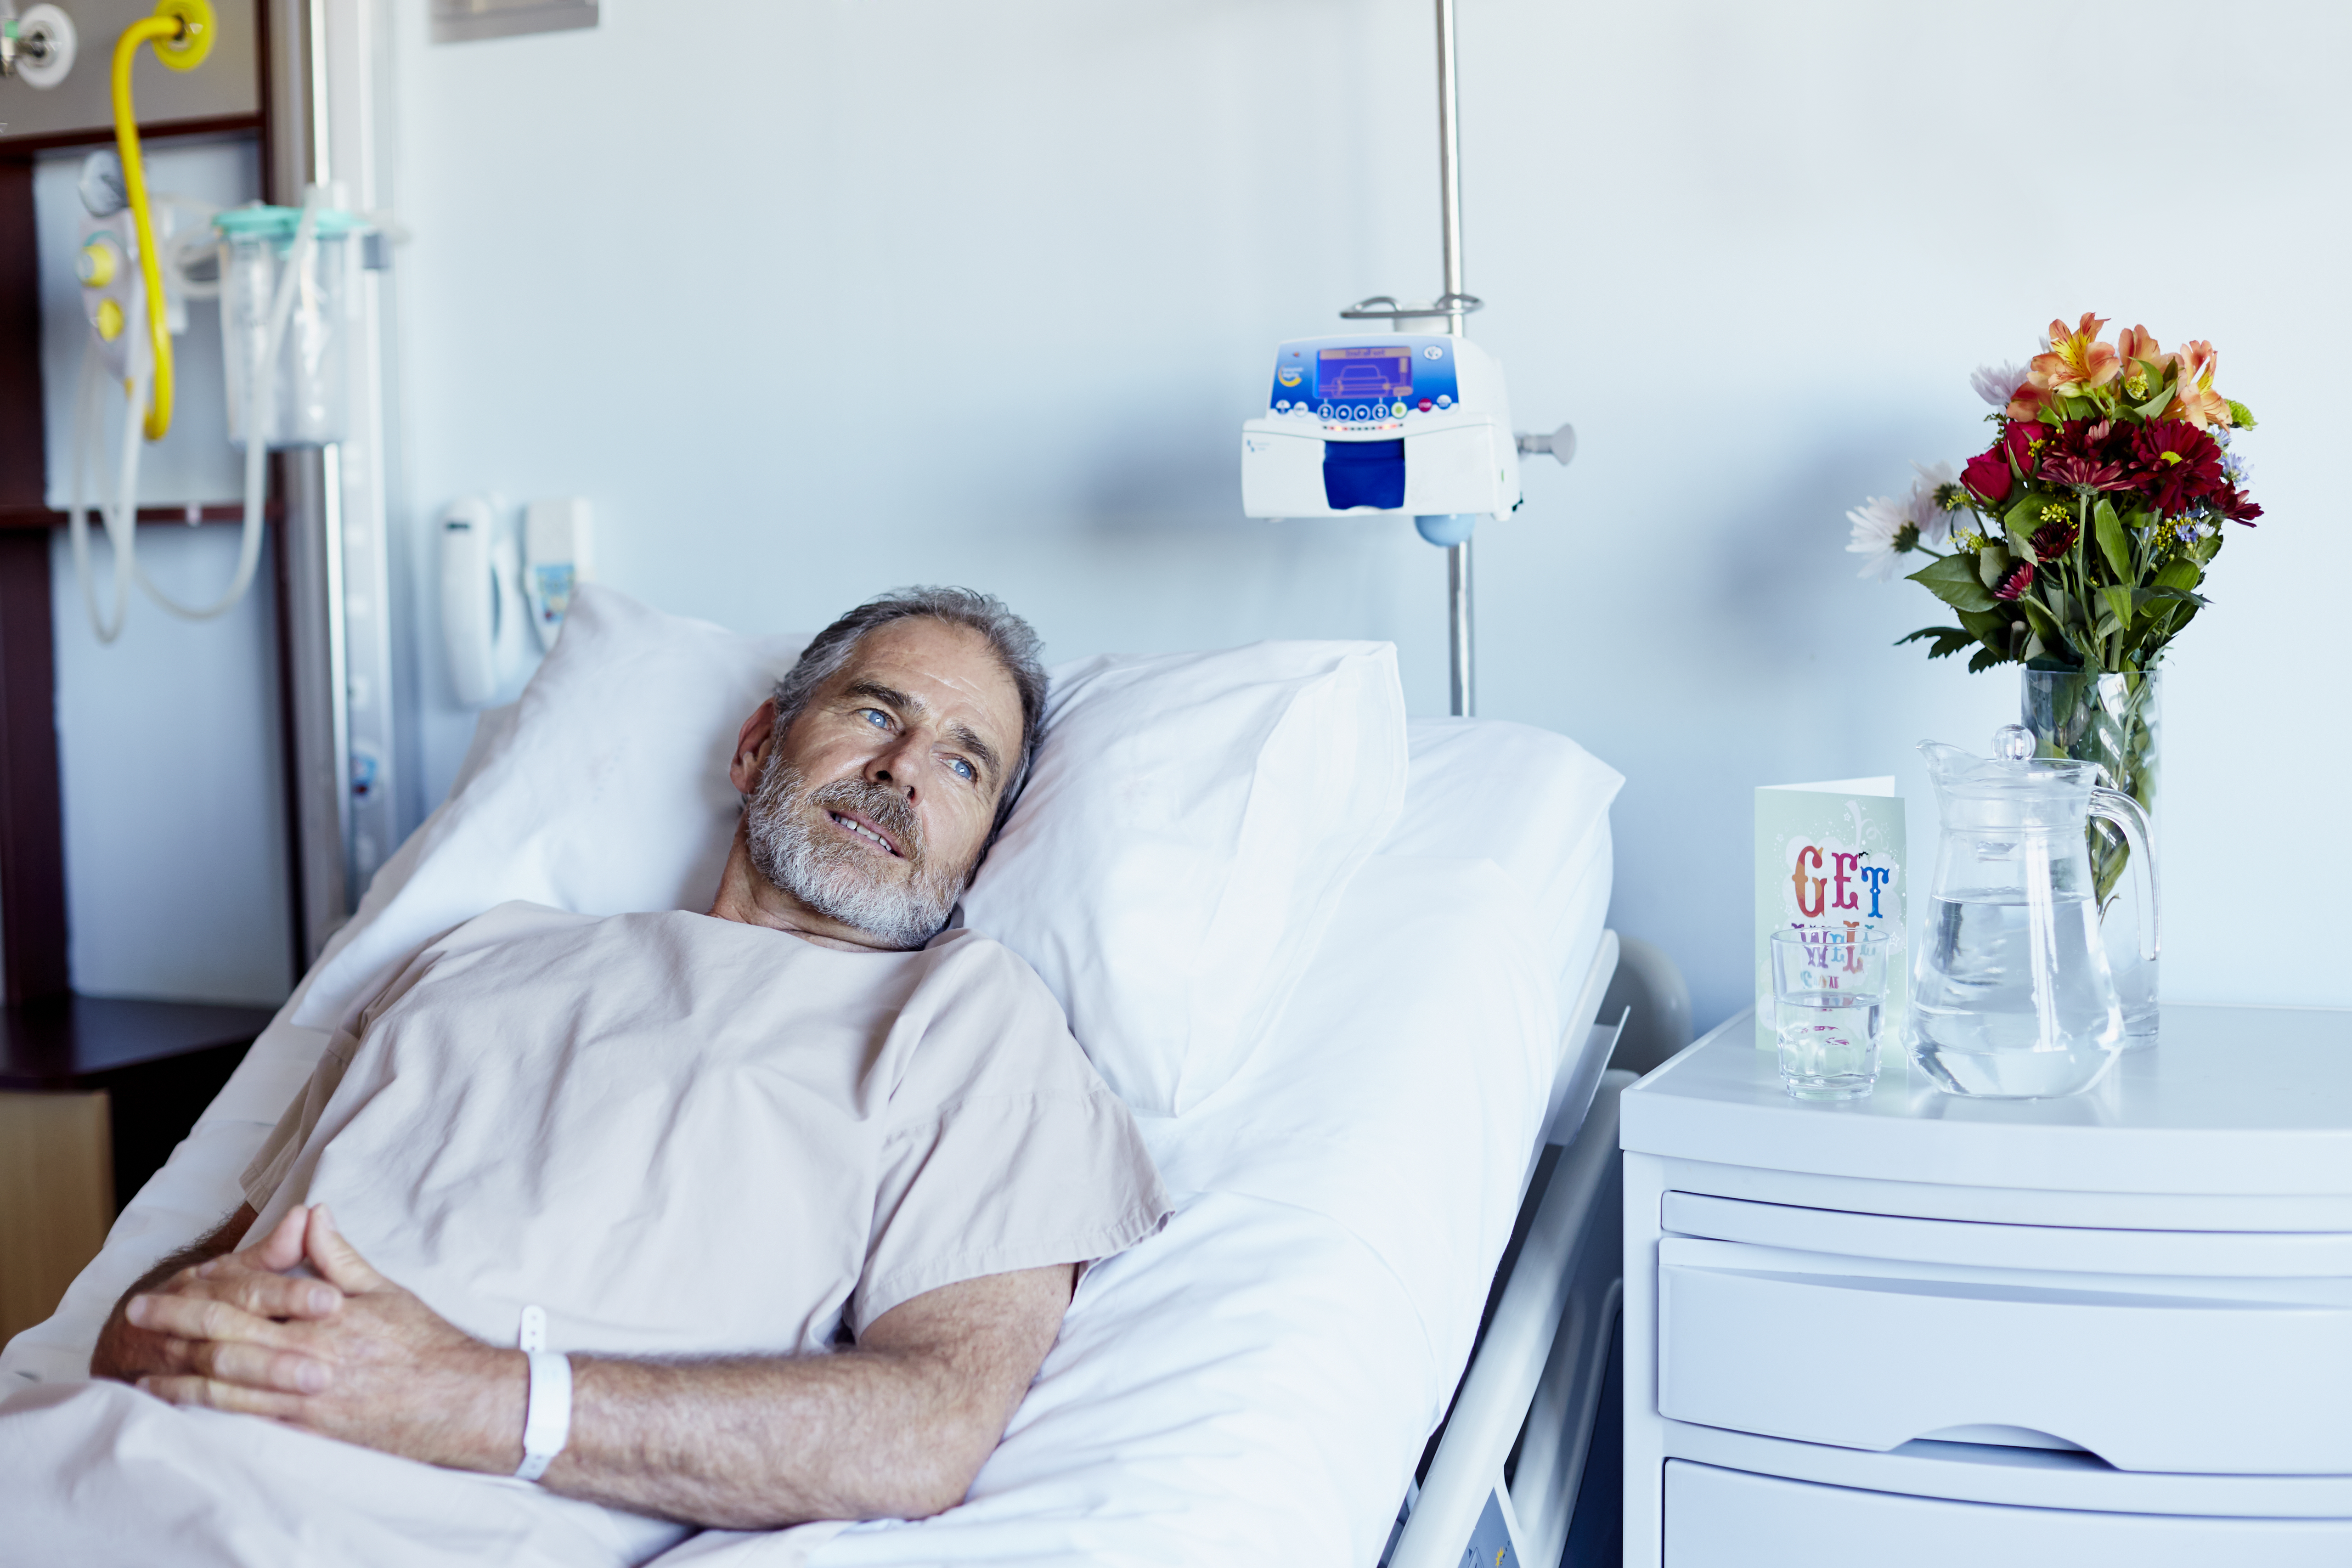 Nachdenklicher Mann entspannt sich auf der Krankenstation | Quelle: Getty Images